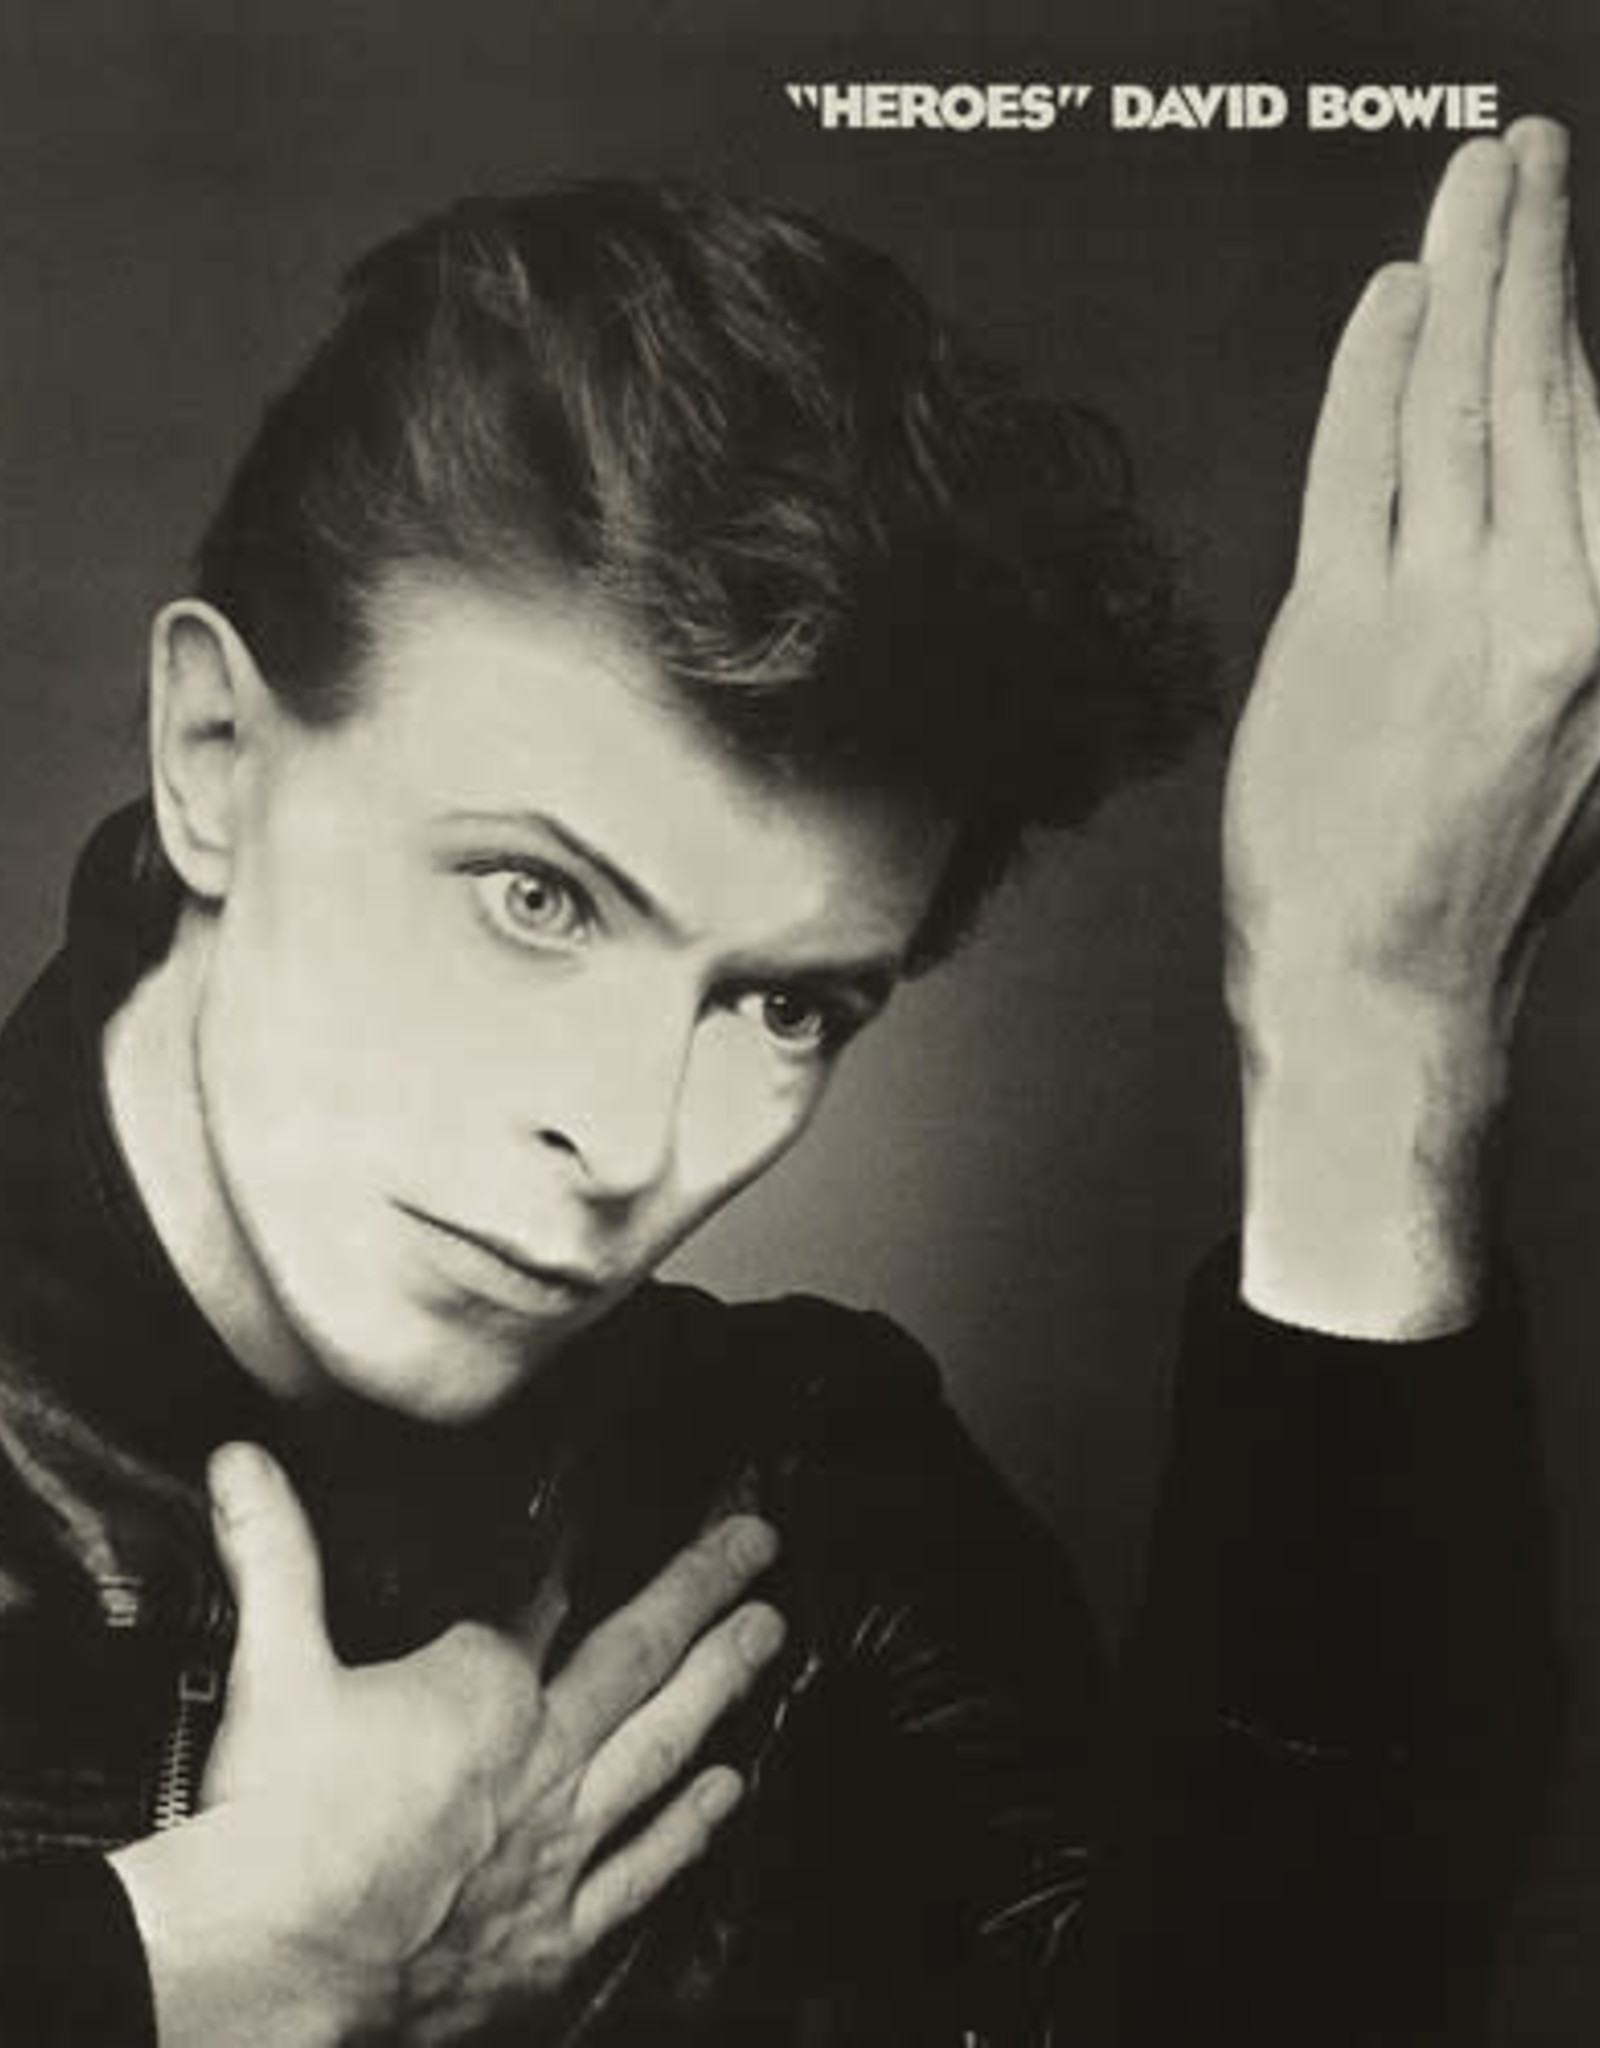 David Bowie - Heroes (2017 Remaster) (Gray Vinyl, Brick & Mortar Exclusive, Remastered)